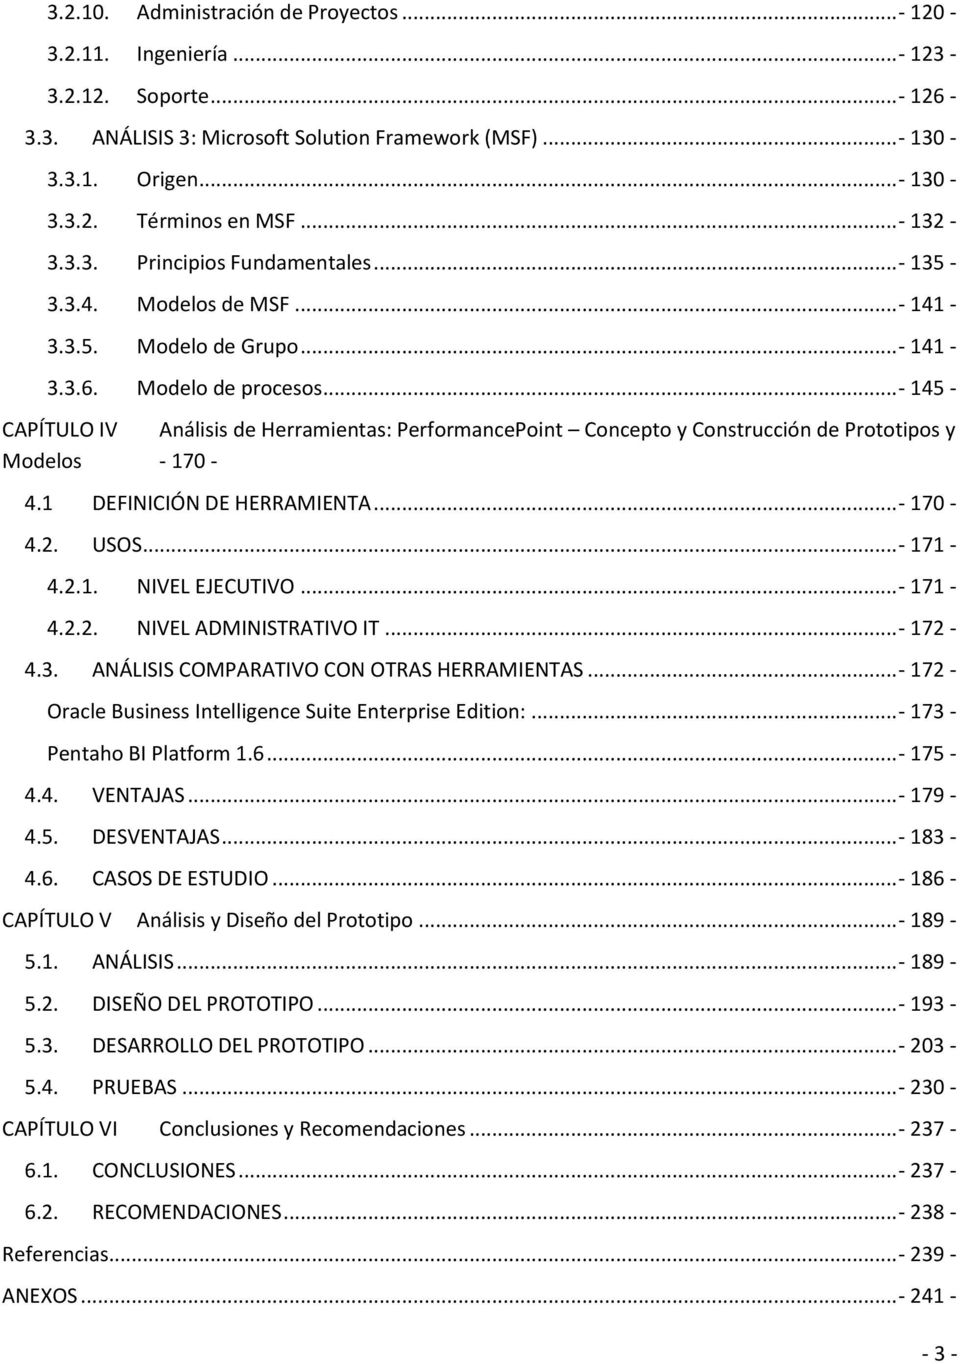 ..- 145 - CAPÍTULO IV Análisis de Herramientas: PerformancePoint Concepto y Construcción de Prototipos y Modelos - 170-4.1 DEFINICIÓN DE HERRAMIENTA...- 170-4.2. USOS...- 171-4.2.1. NIVEL EJECUTIVO.